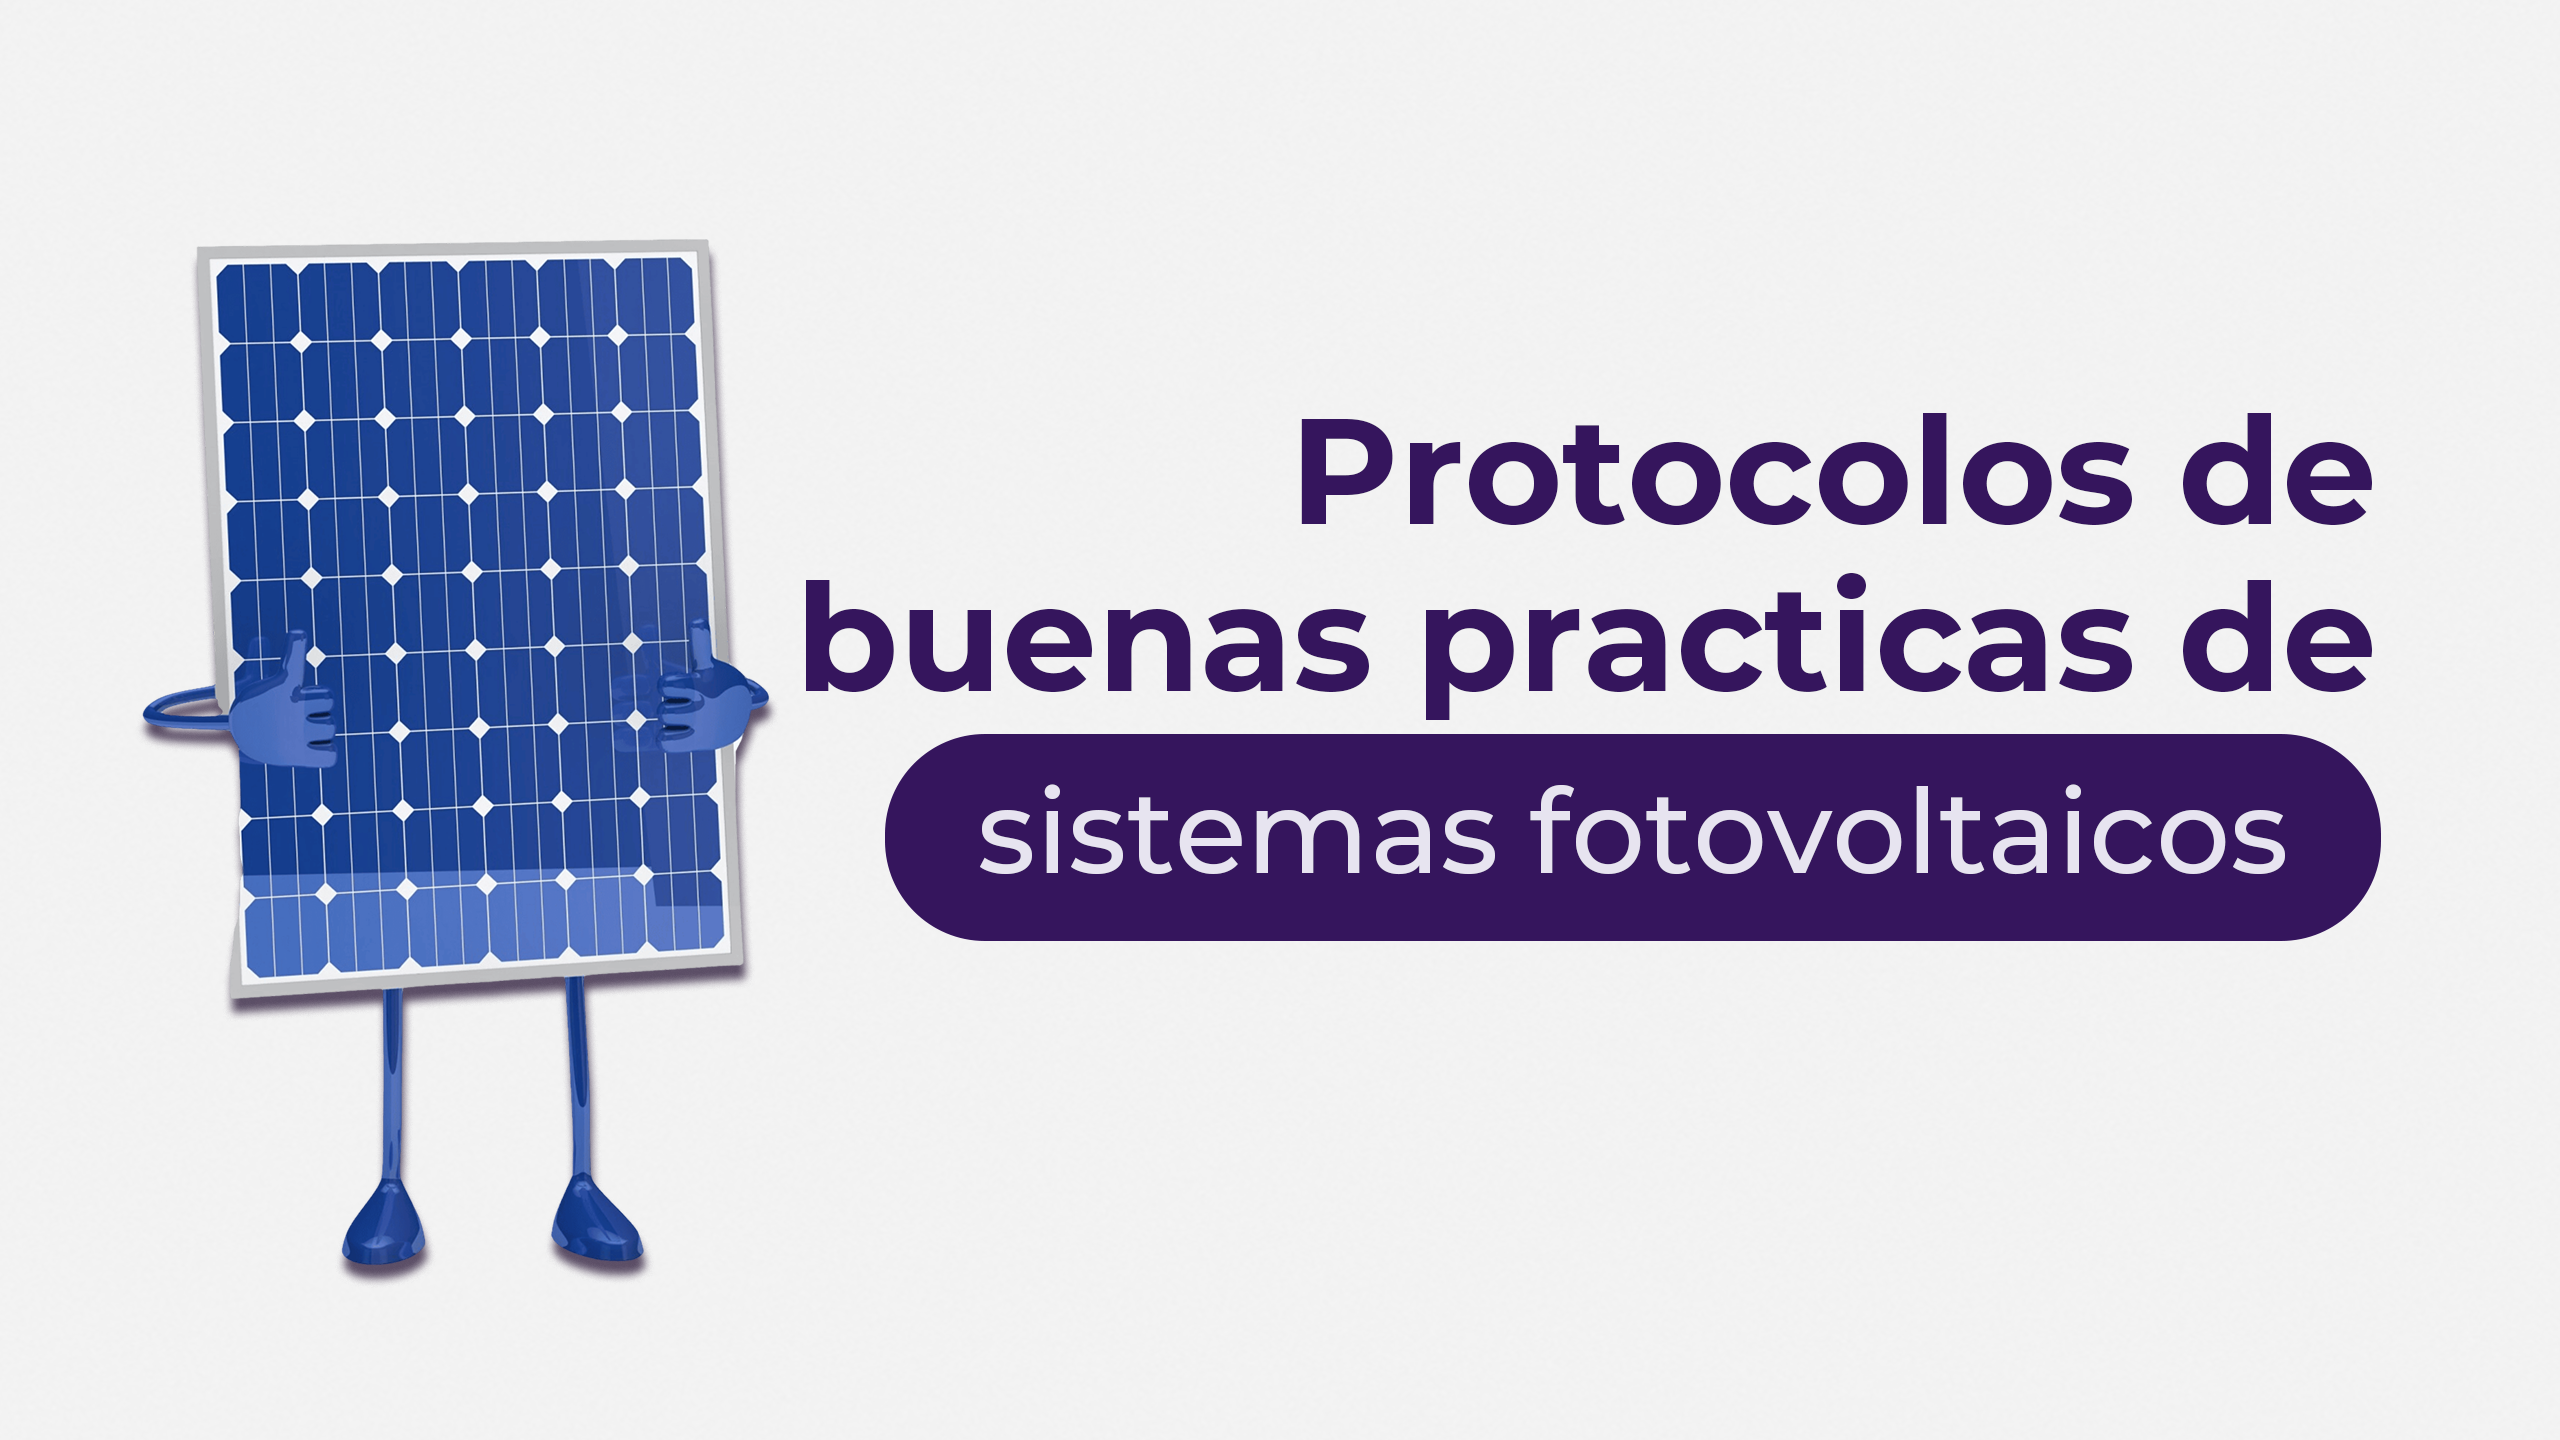 Protocolos de buenas prácticas de sistemas fotovoltaicos